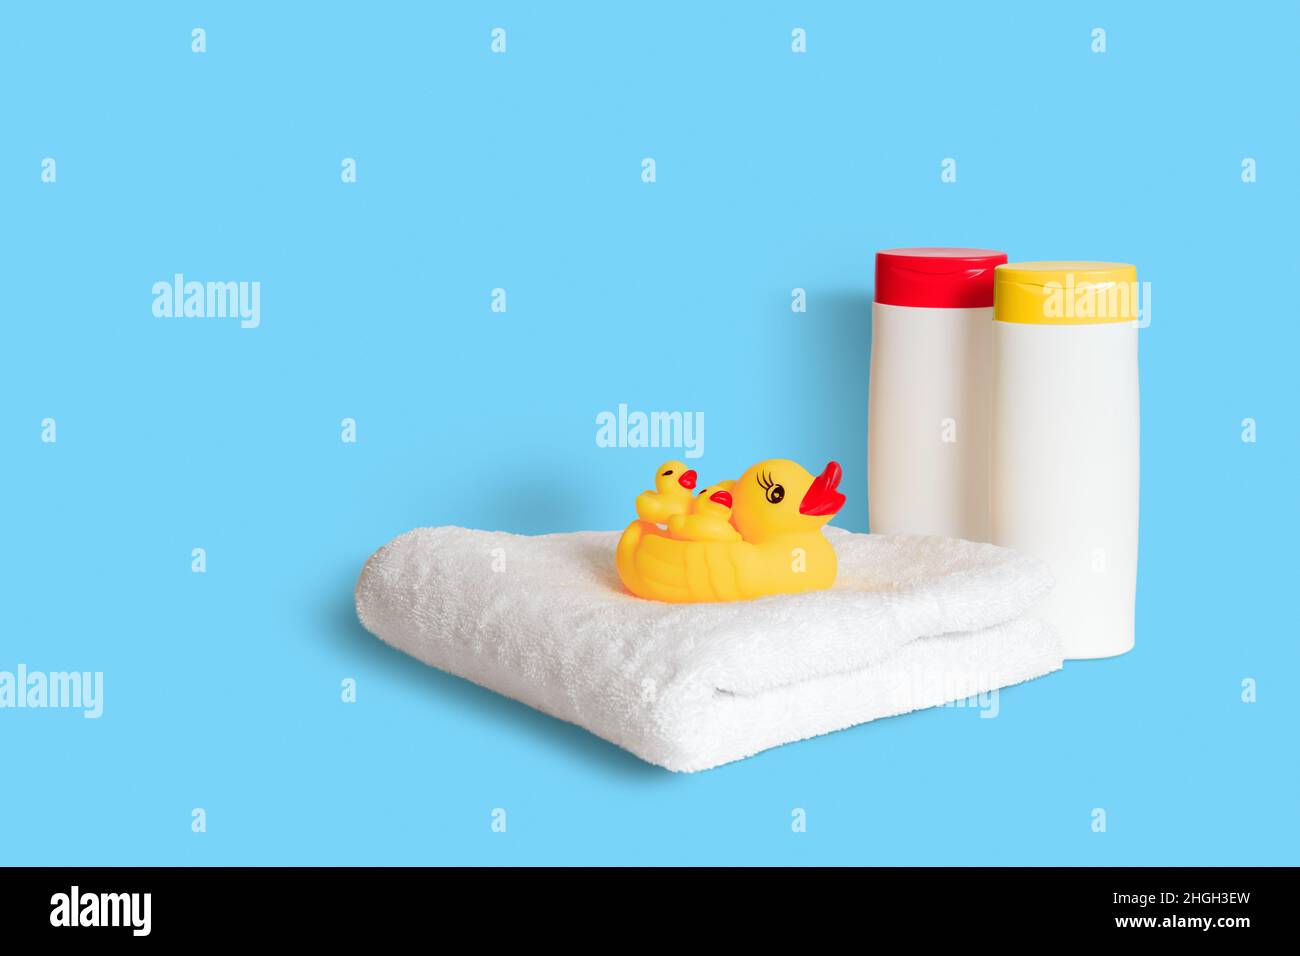 Pato de goma amarillo sobre toalla blanca suave y dos botellas blancas de  plástico con tapones amarillos y rojos sobre fondo azul claro. Accesorios  de baño para niños Fotografía de stock -